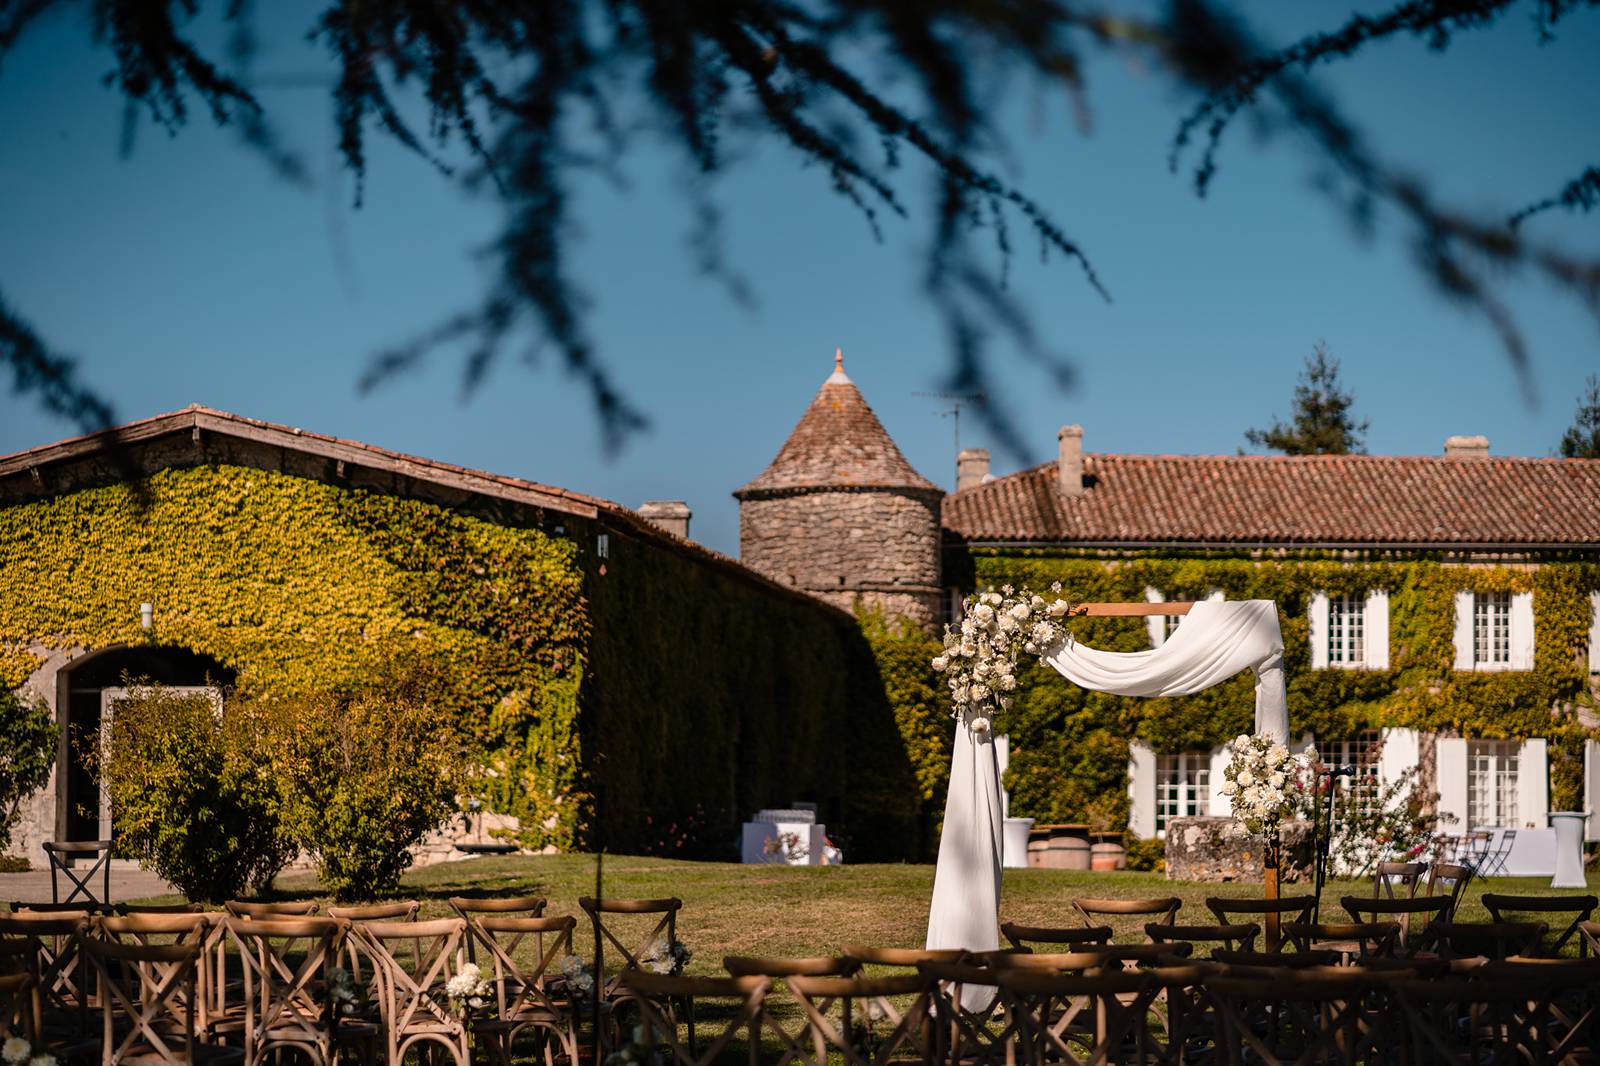 Mariage anglais au Château Lardier en Gironde, organisé par Pure Expression Events, avec une cérémonie laïque dans les jardins du chateau et un groupe live !